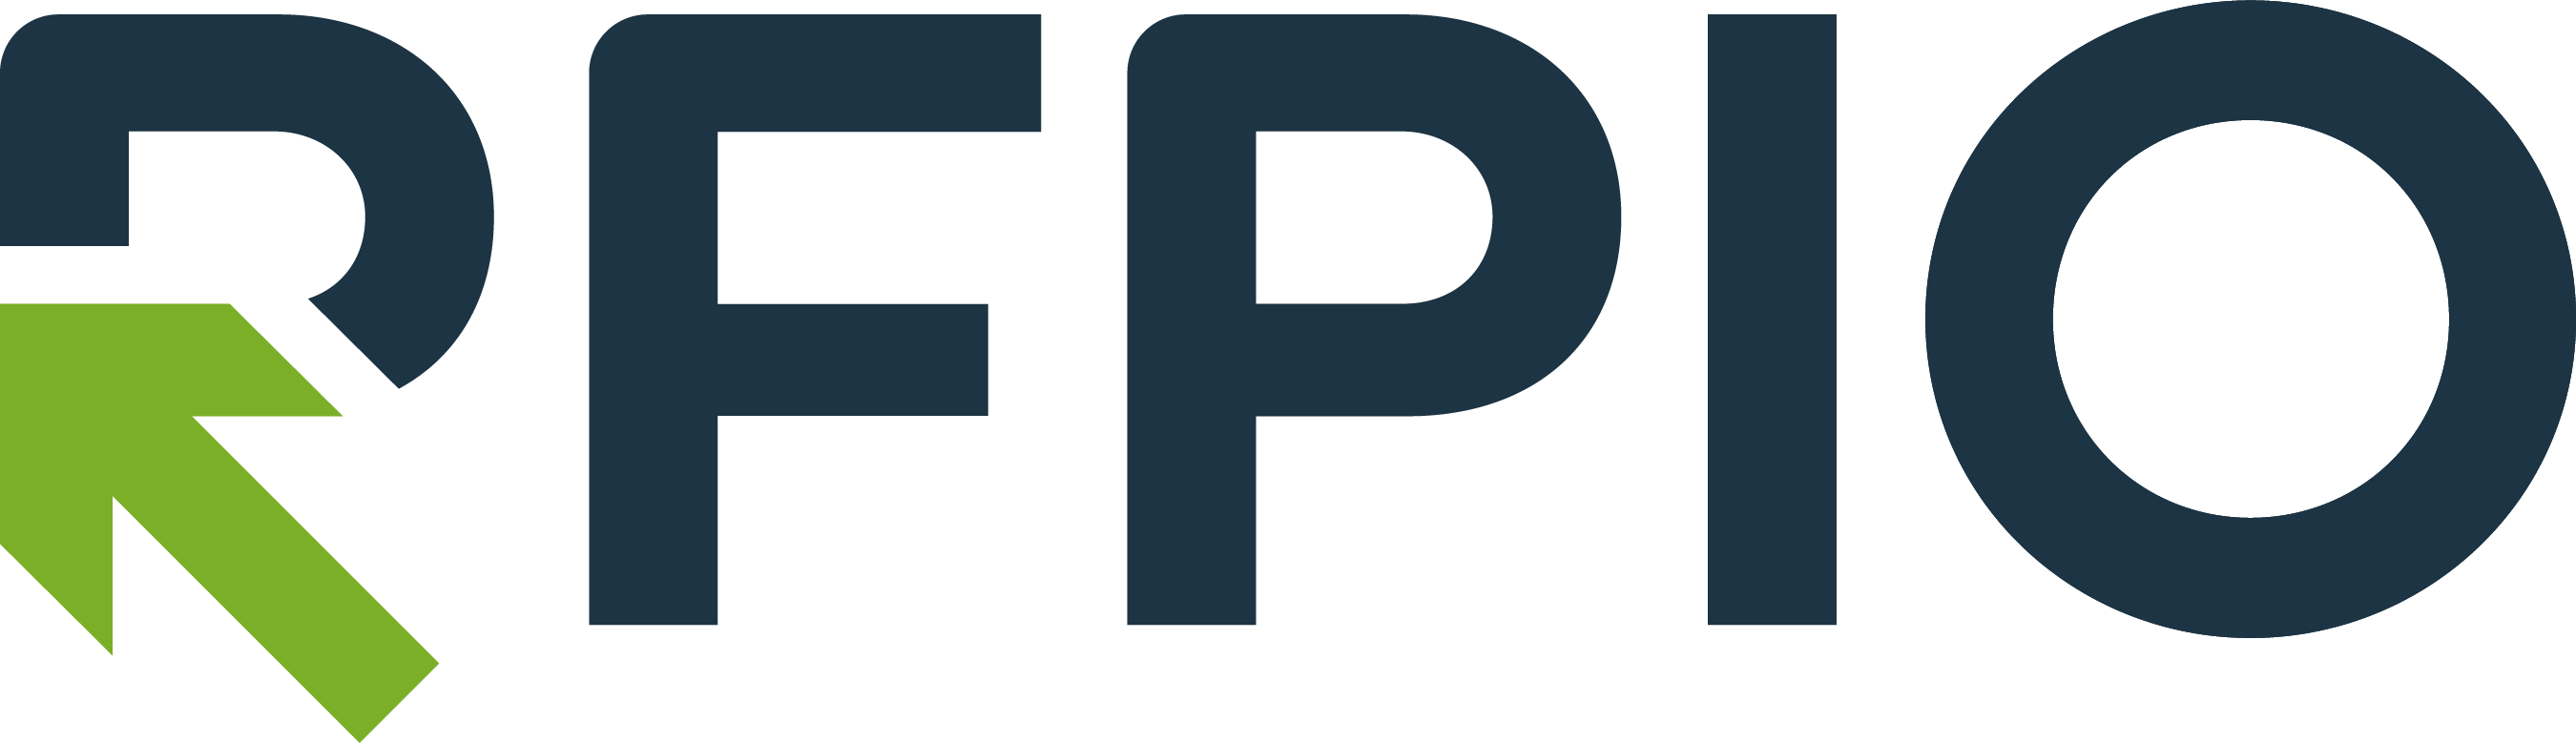 RFPIO_Logo.png